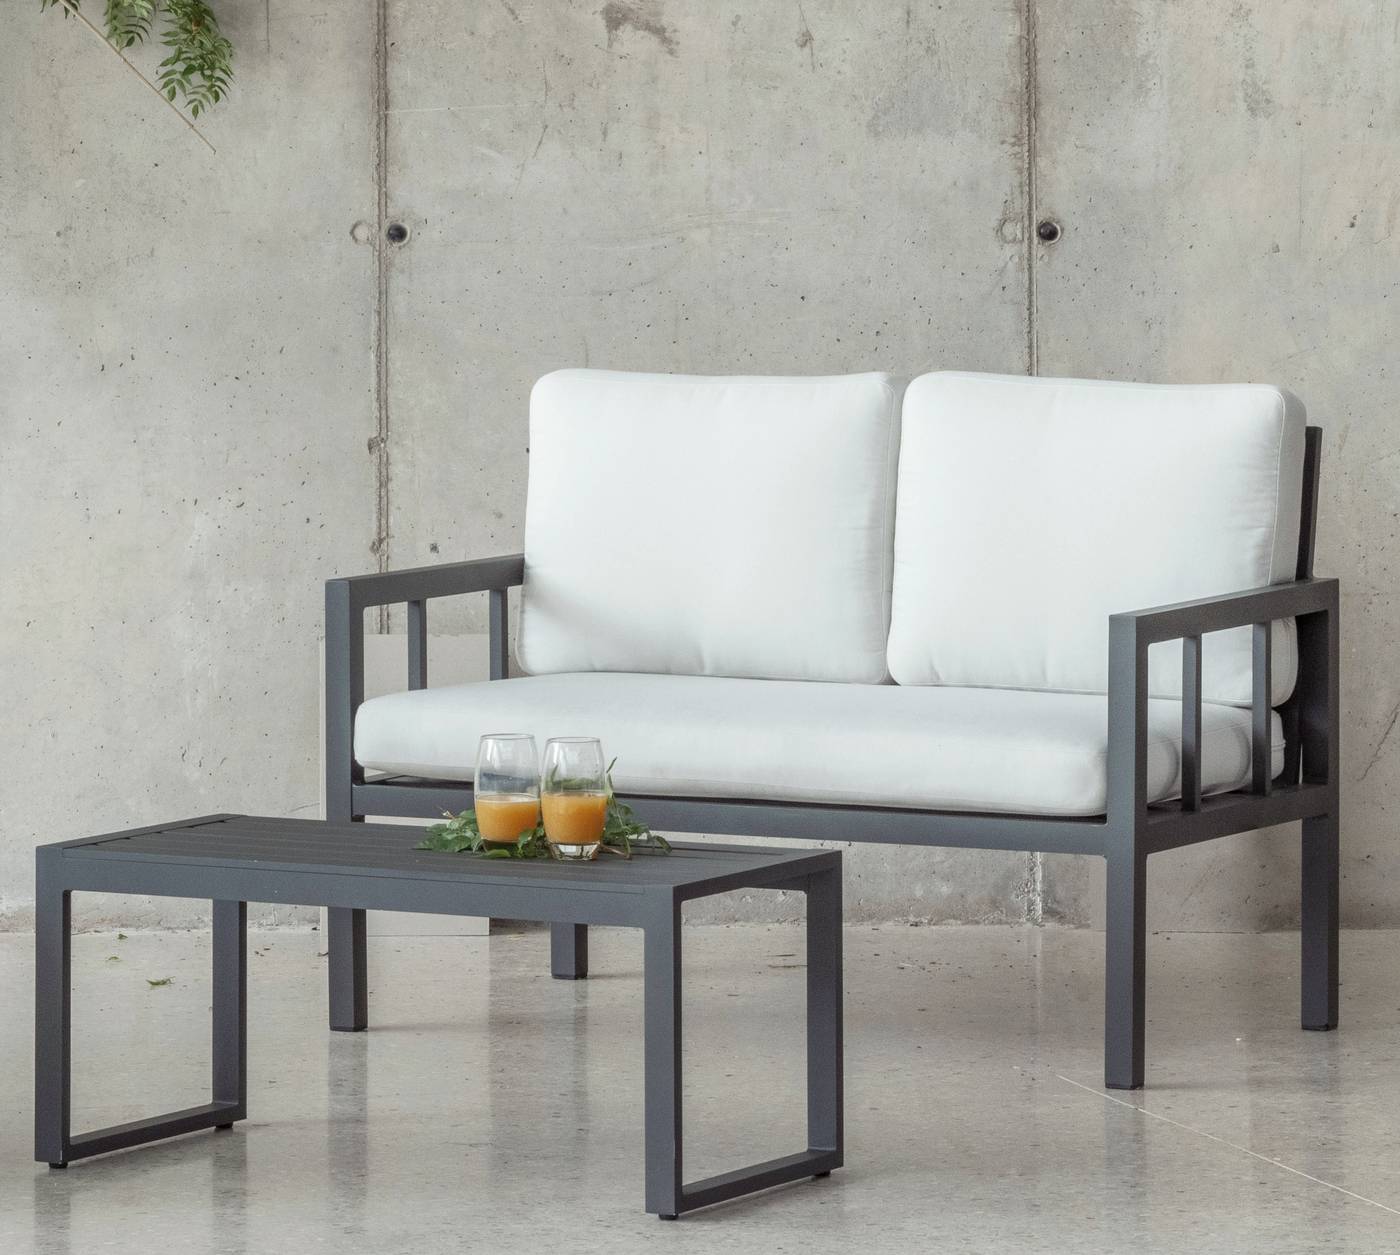 Set Aluminio Luxe Solano-7 - Conjunto aluminio: 1 sofá 2 plazas + 2 sillones + 1 mesa de centro + cojines. Disponible en color blanco o antracita.<br/><br/><b>OFERTA VÁLIDA HASTA EL 30 DE JUNIO O FIN DE EXISTENCIAS</b>.